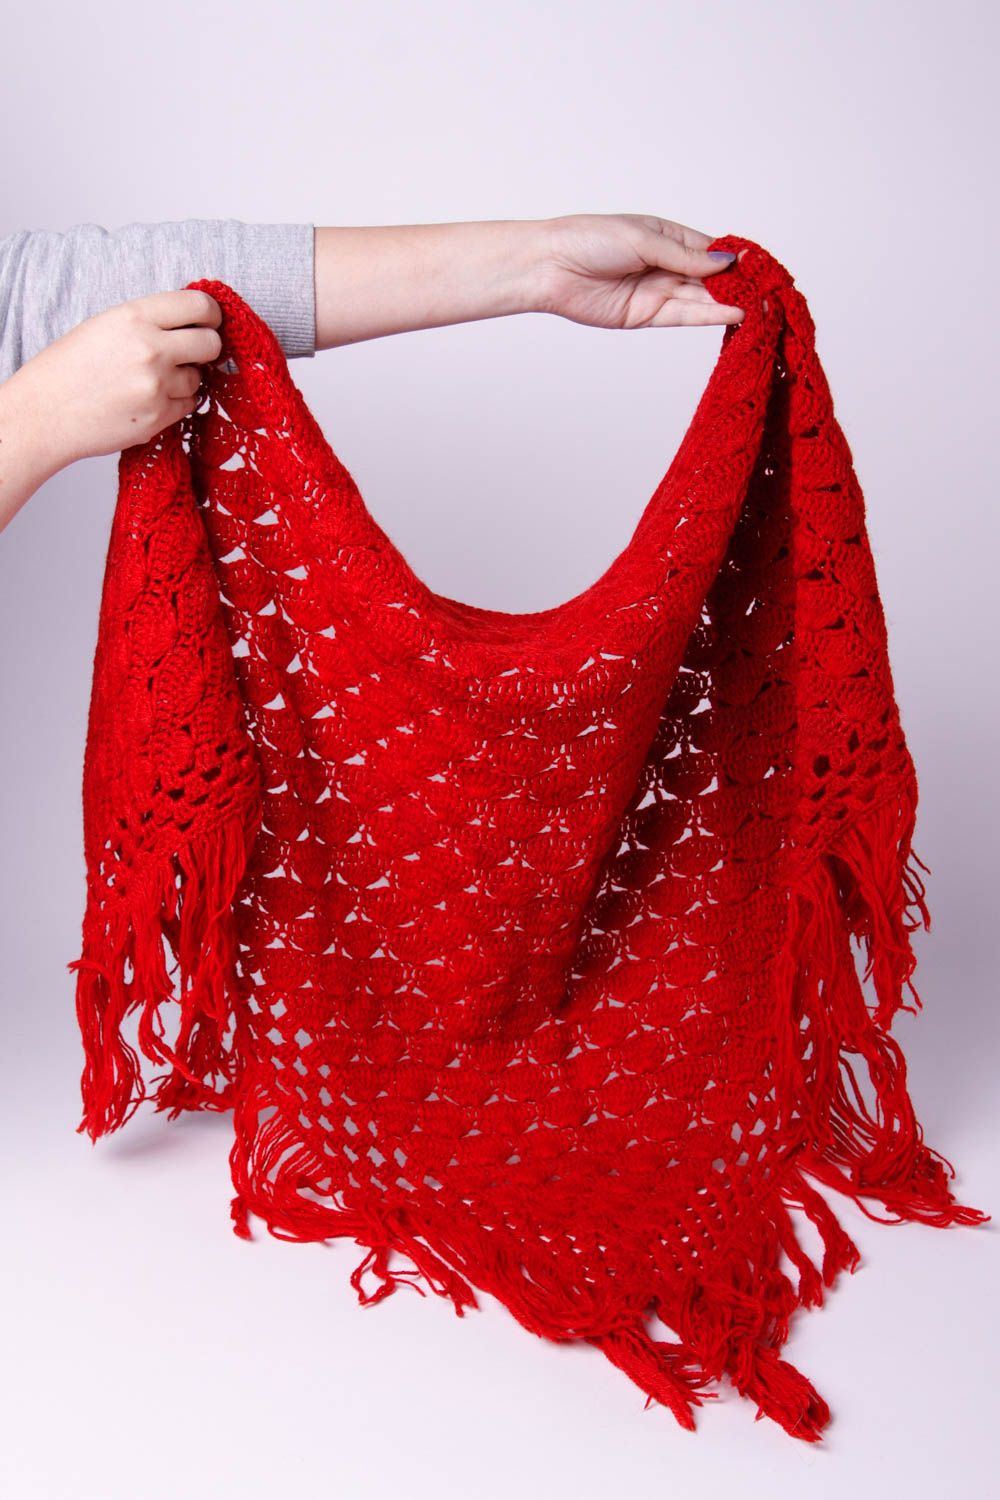 Вязаная шаль ручной работы женская накидка красный шейный платок теплый зимний фото 3